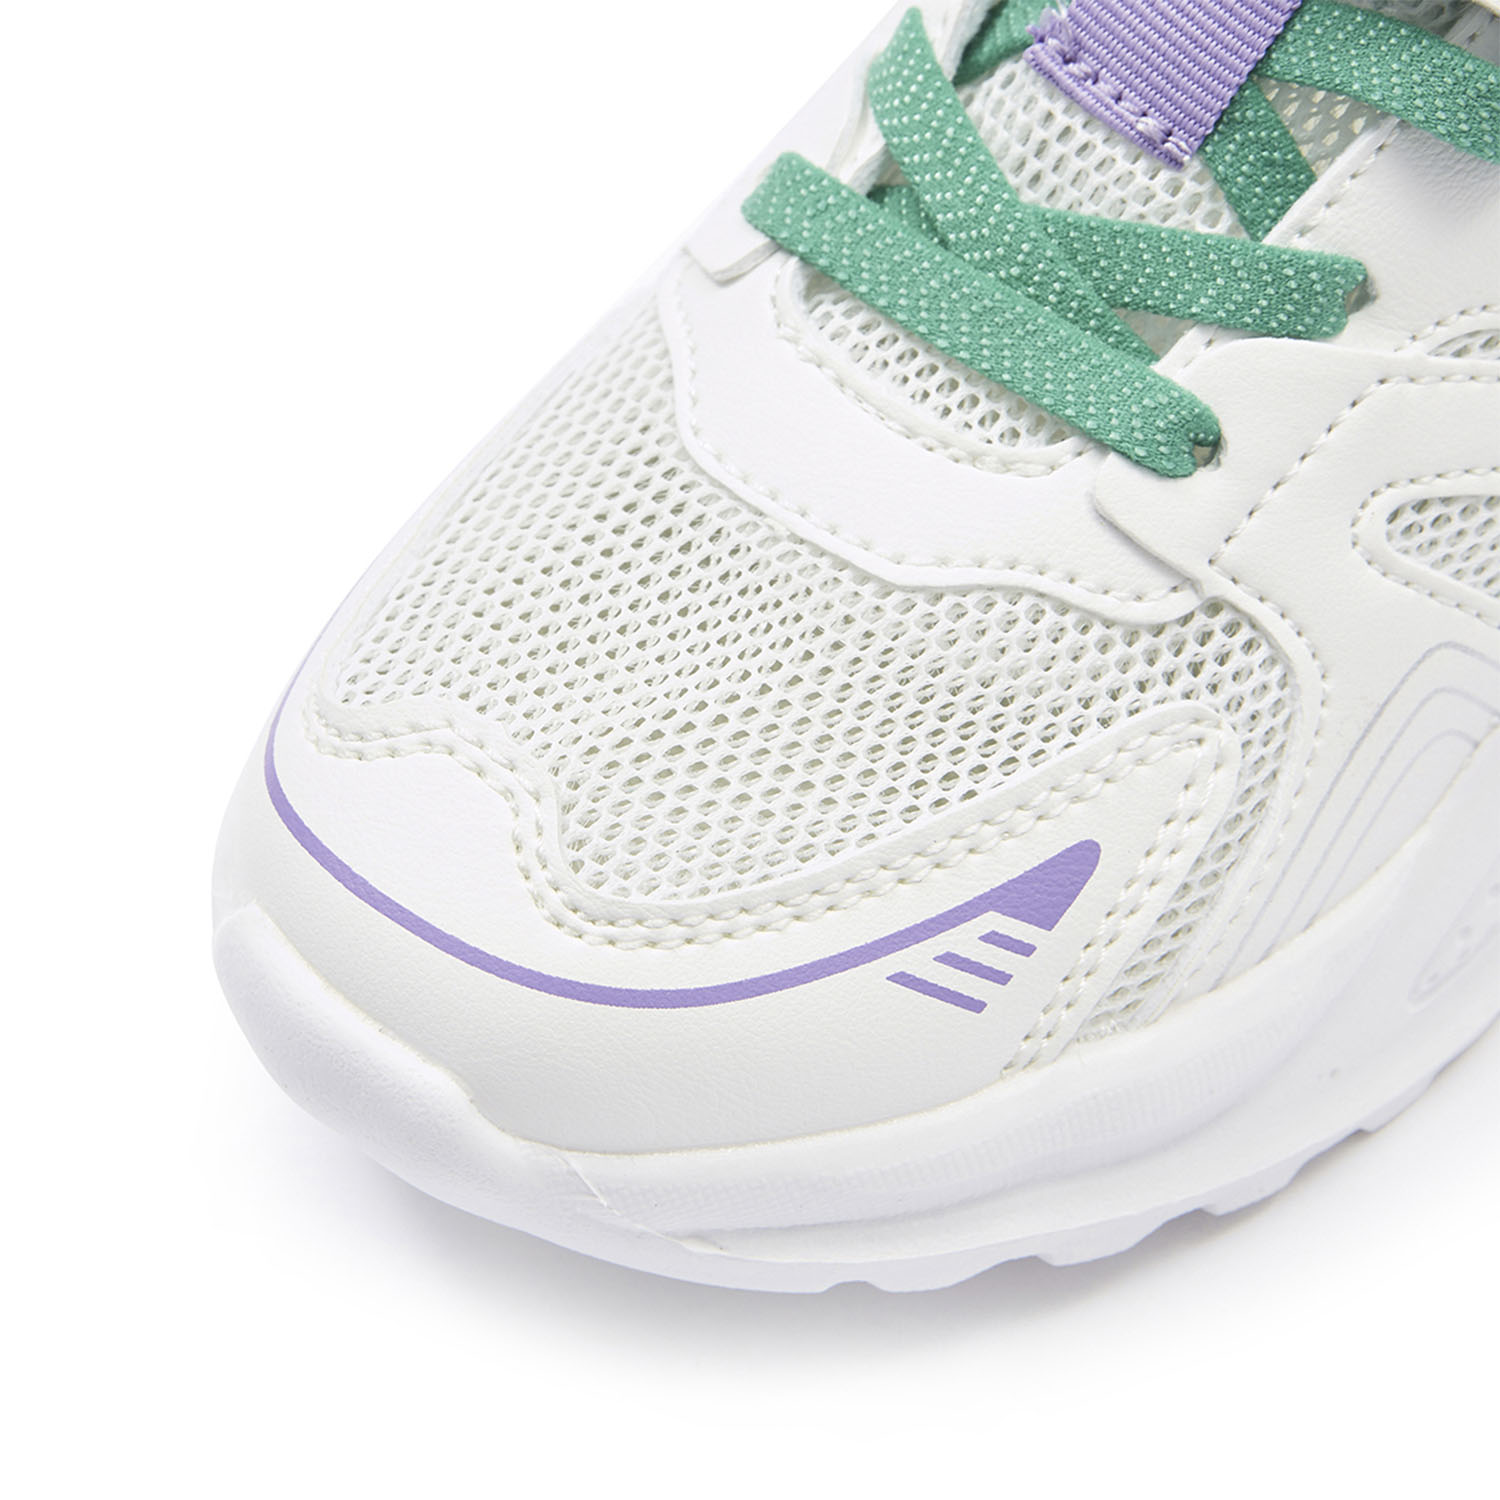 Ботинки детские Toread Children's sneakers White/green